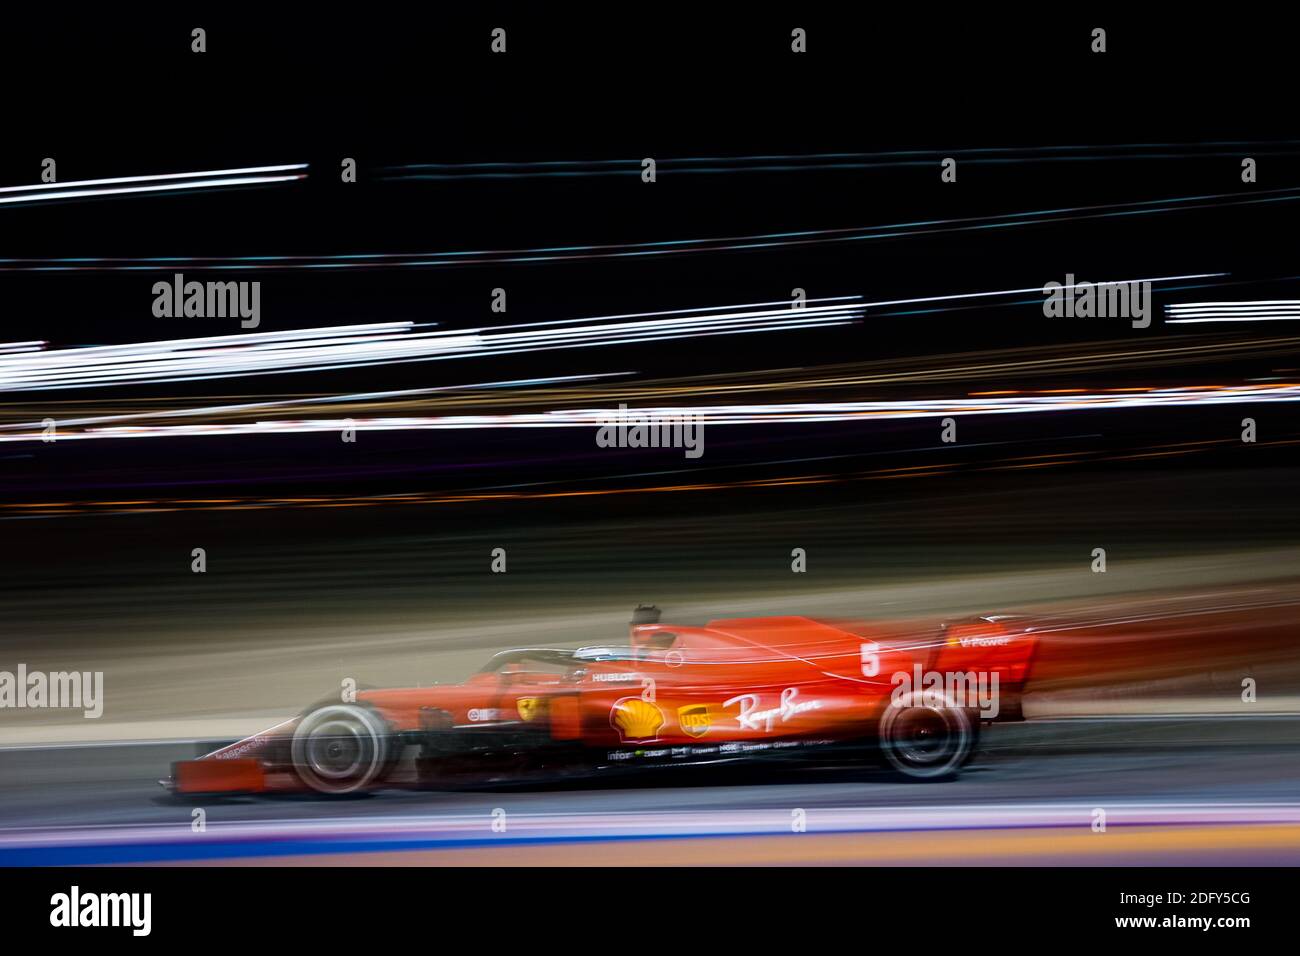 05 VETTEL Sebastian (ger), Scuderia Ferrari SF1000, azione durante la Formula 1 Rolex Sakhir Grand Prix 2020, dal 4 dicembre / LM Foto Stock